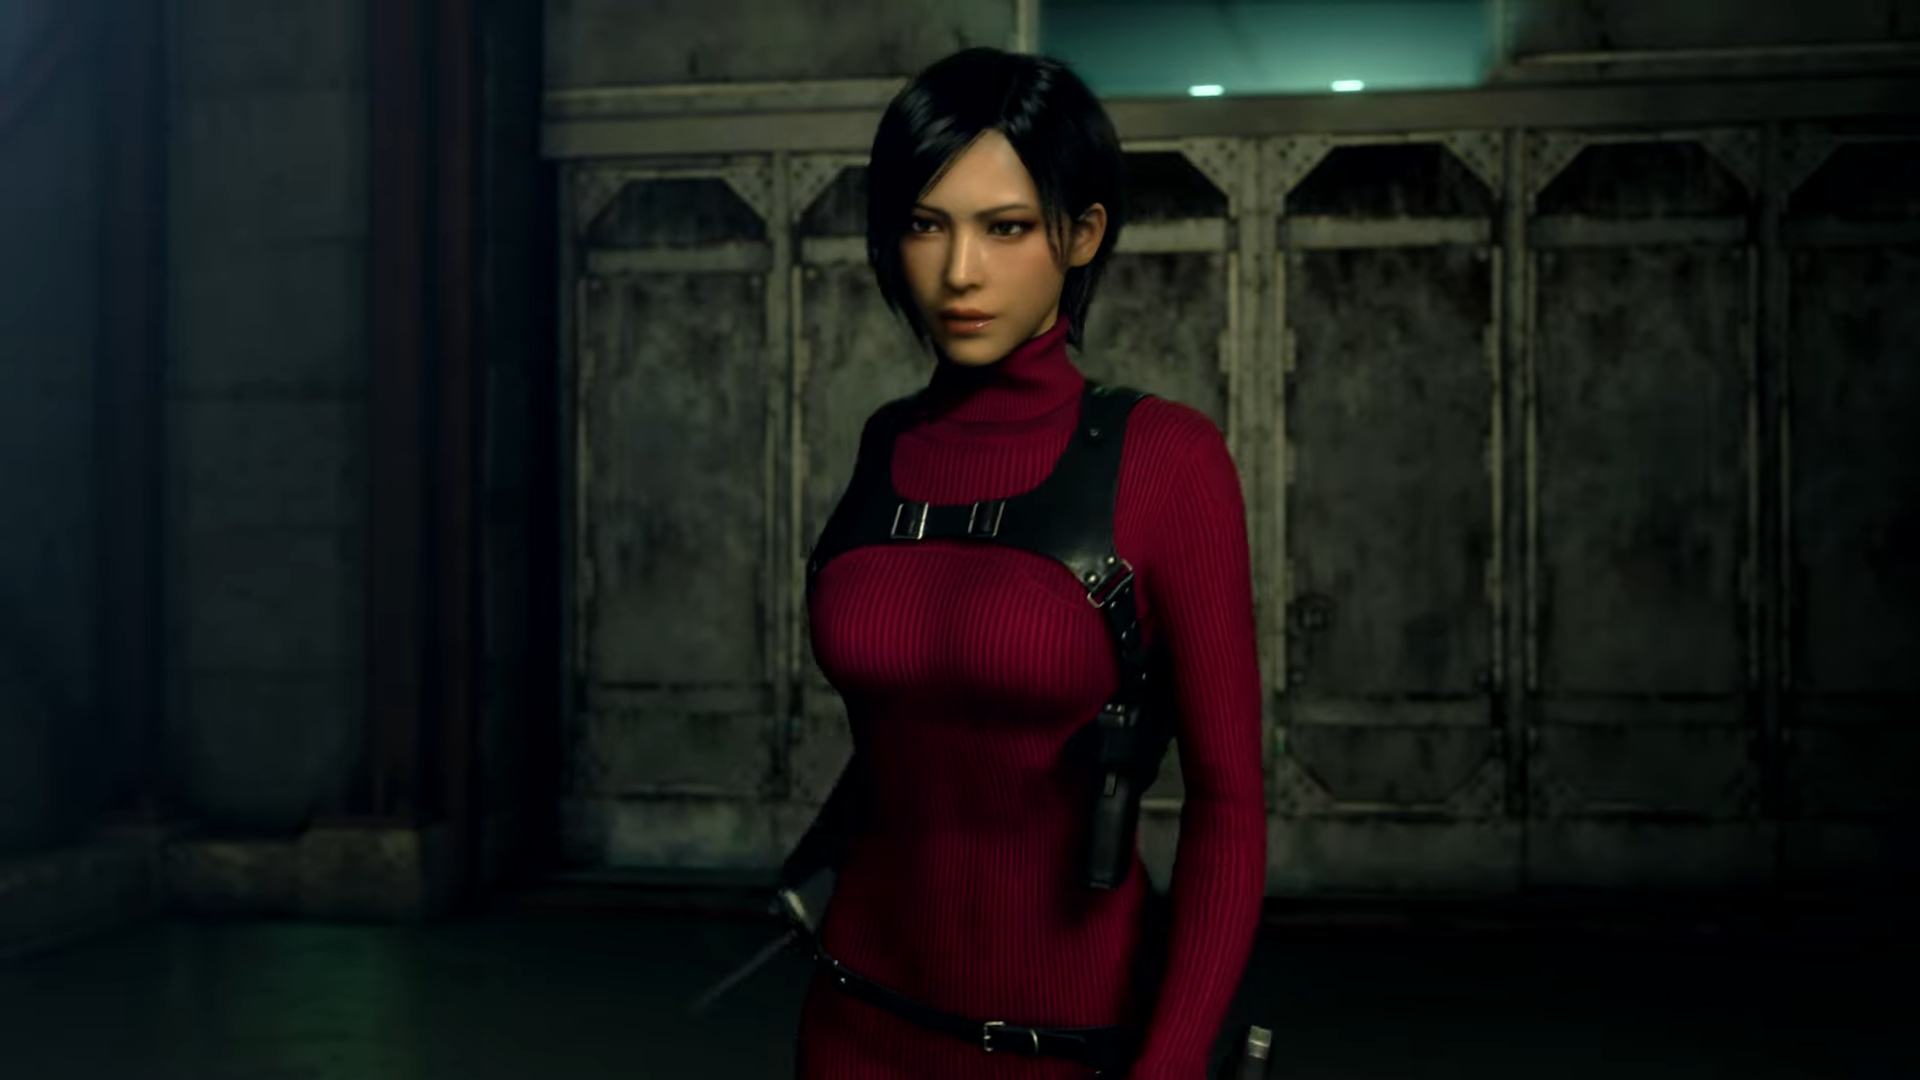 Resident Evil 4 Remake Separate Ways Trailer Teases Wesker